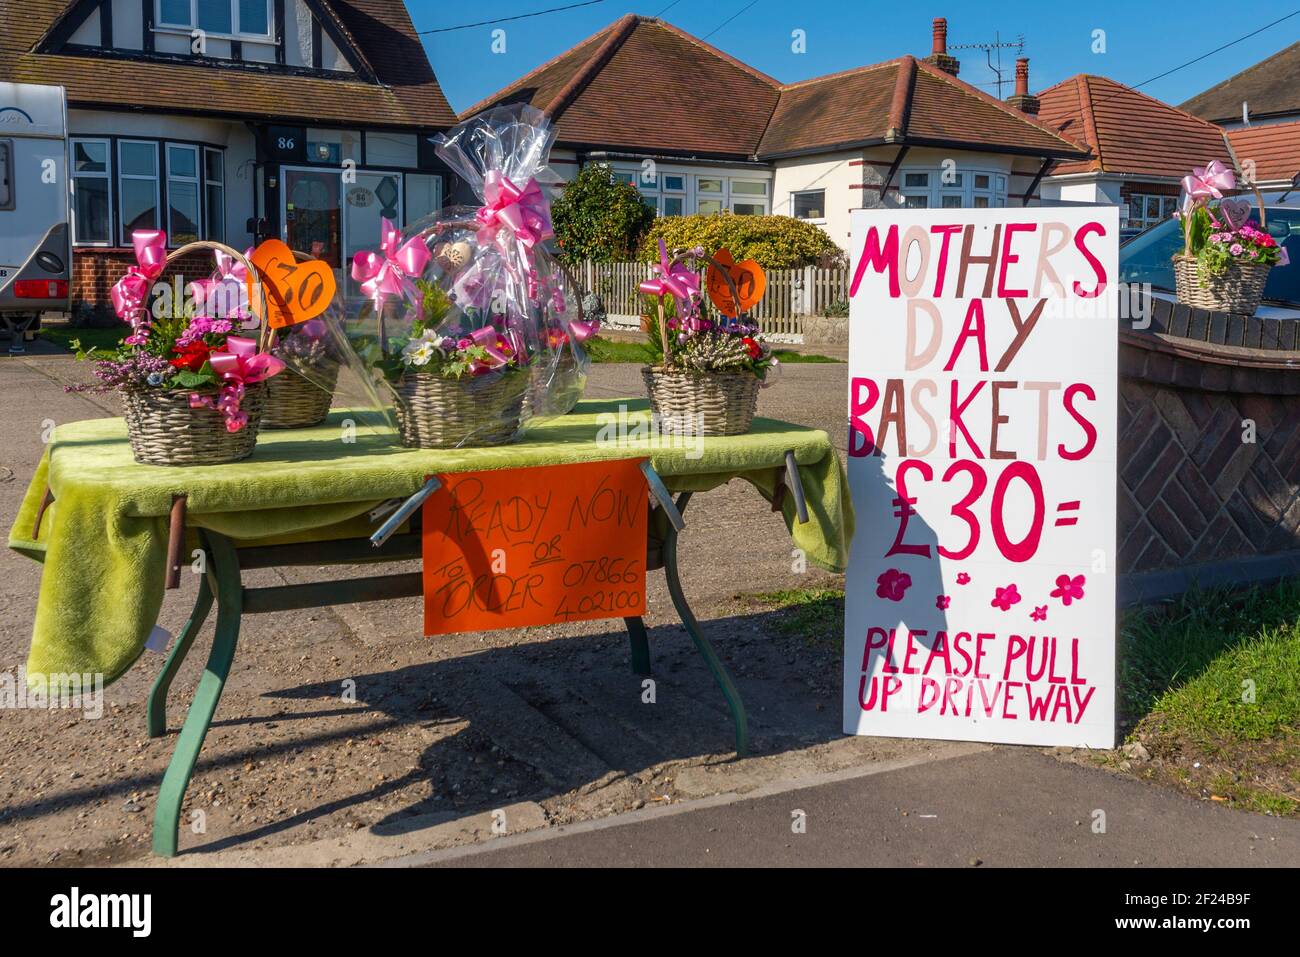 Home Yard Stall Verkauf Muttertag Blumenkörbe in Southend on Sea, Essex, Großbritannien. Mütterlichen Sonntag Geschenke. Hausgemacht Stockfoto